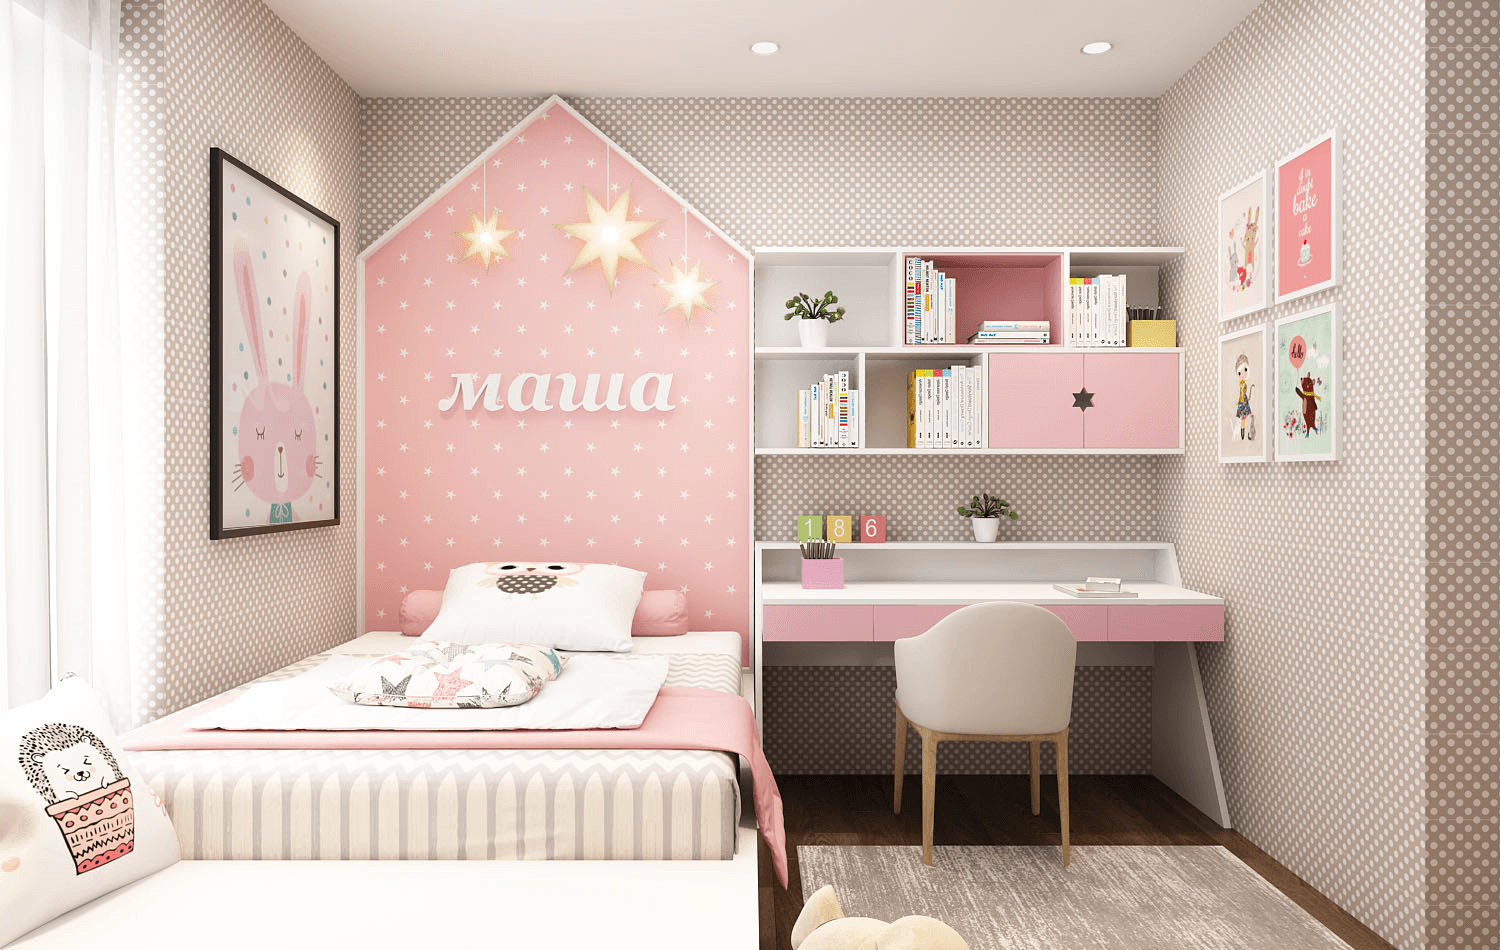 Tạo không gian phòng ngủ bé gái bằng màu hồng vừa đảm bảo tính thẩm mĩ vừa giúp bé ngủ sâu giấc hơn. Không gian phòng ngủ được trang trí thể hiện nét nữ tính, dịu dàng.